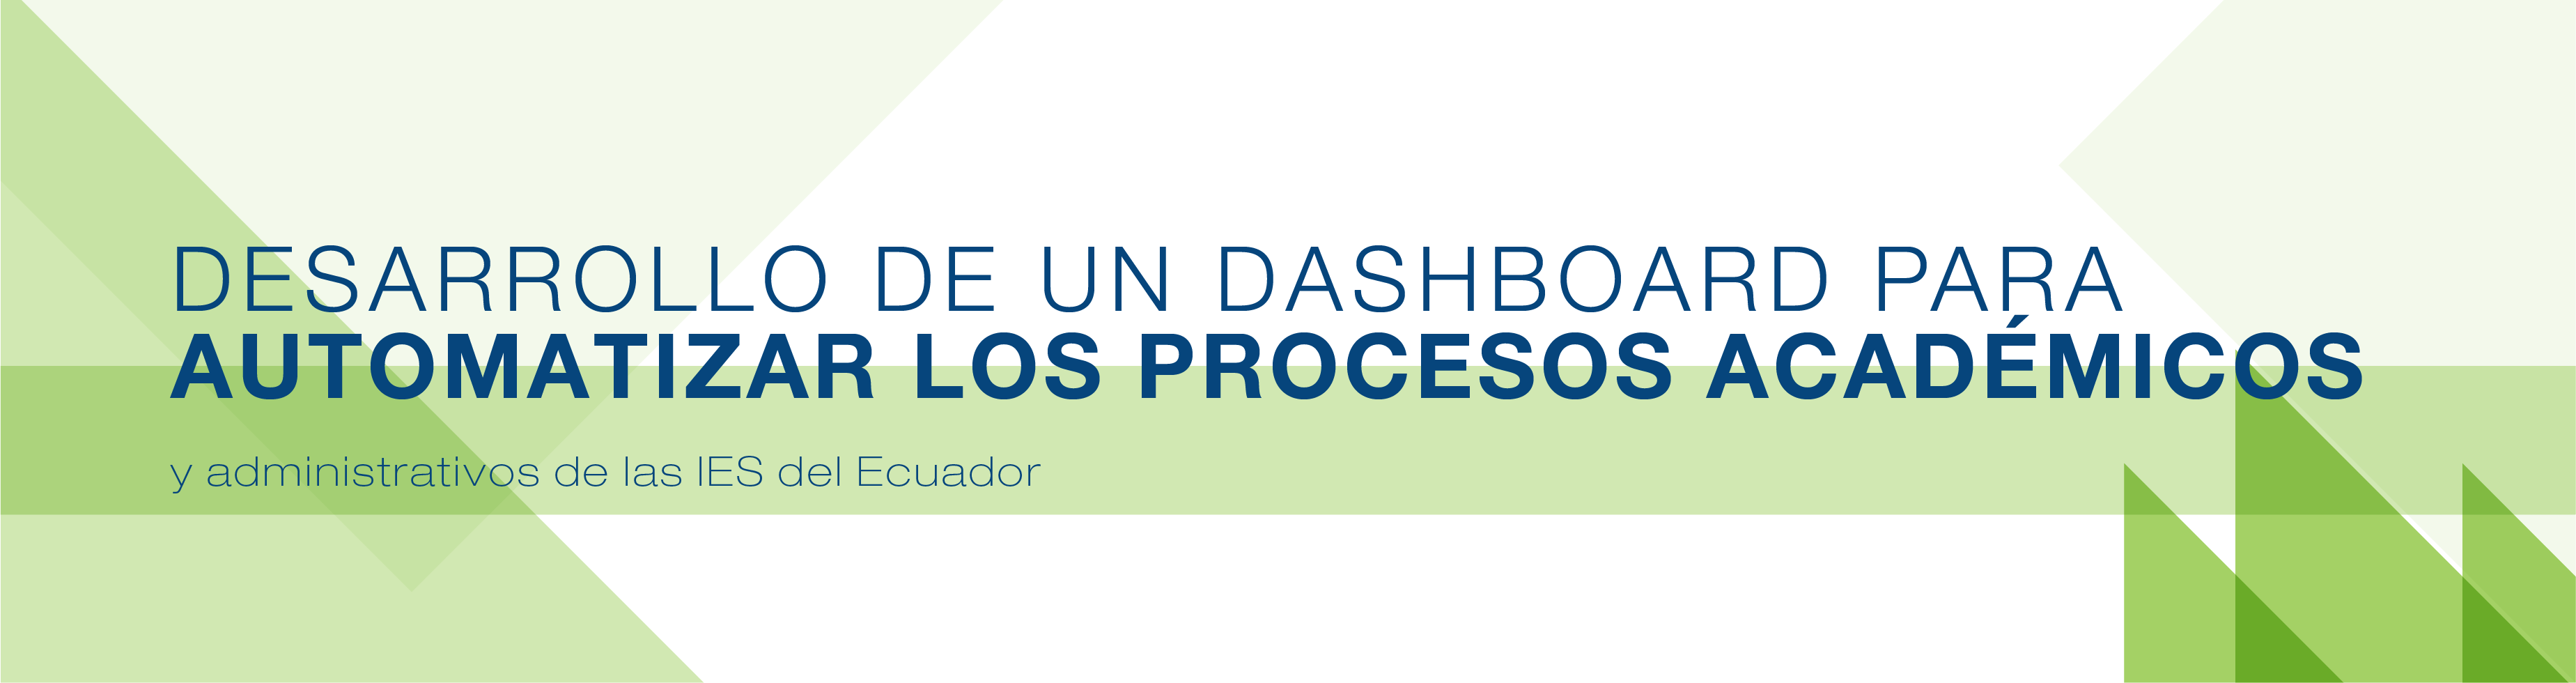 Desarrollo de un Dashboard para automatizar los procesos académicos y administrativos de las IES del Ecuador